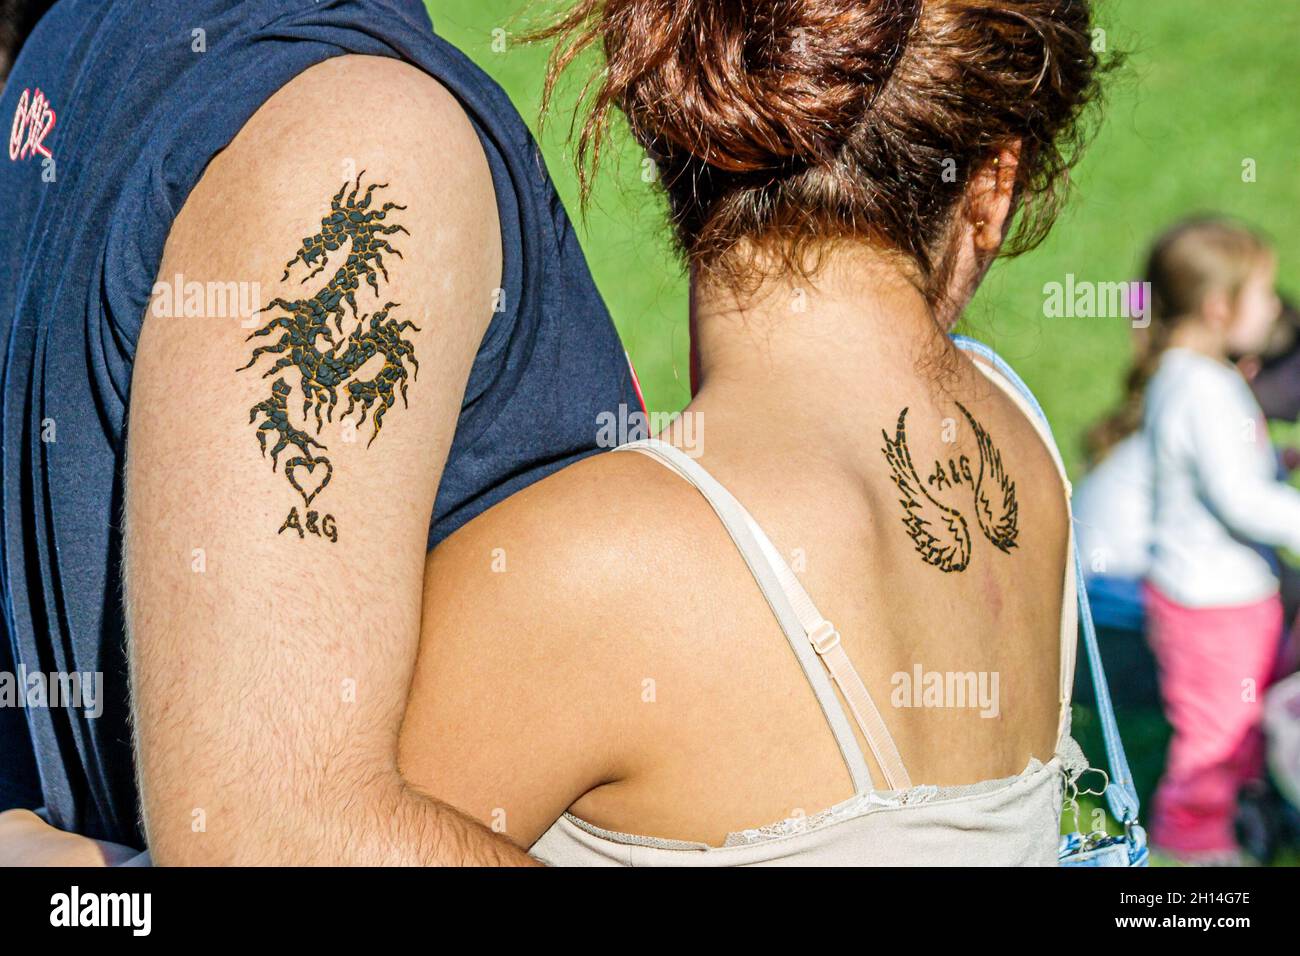 Miami Florida, Tamiami Park, Harvest Festival, couple homme homme femme femme femme tatouages Banque D'Images